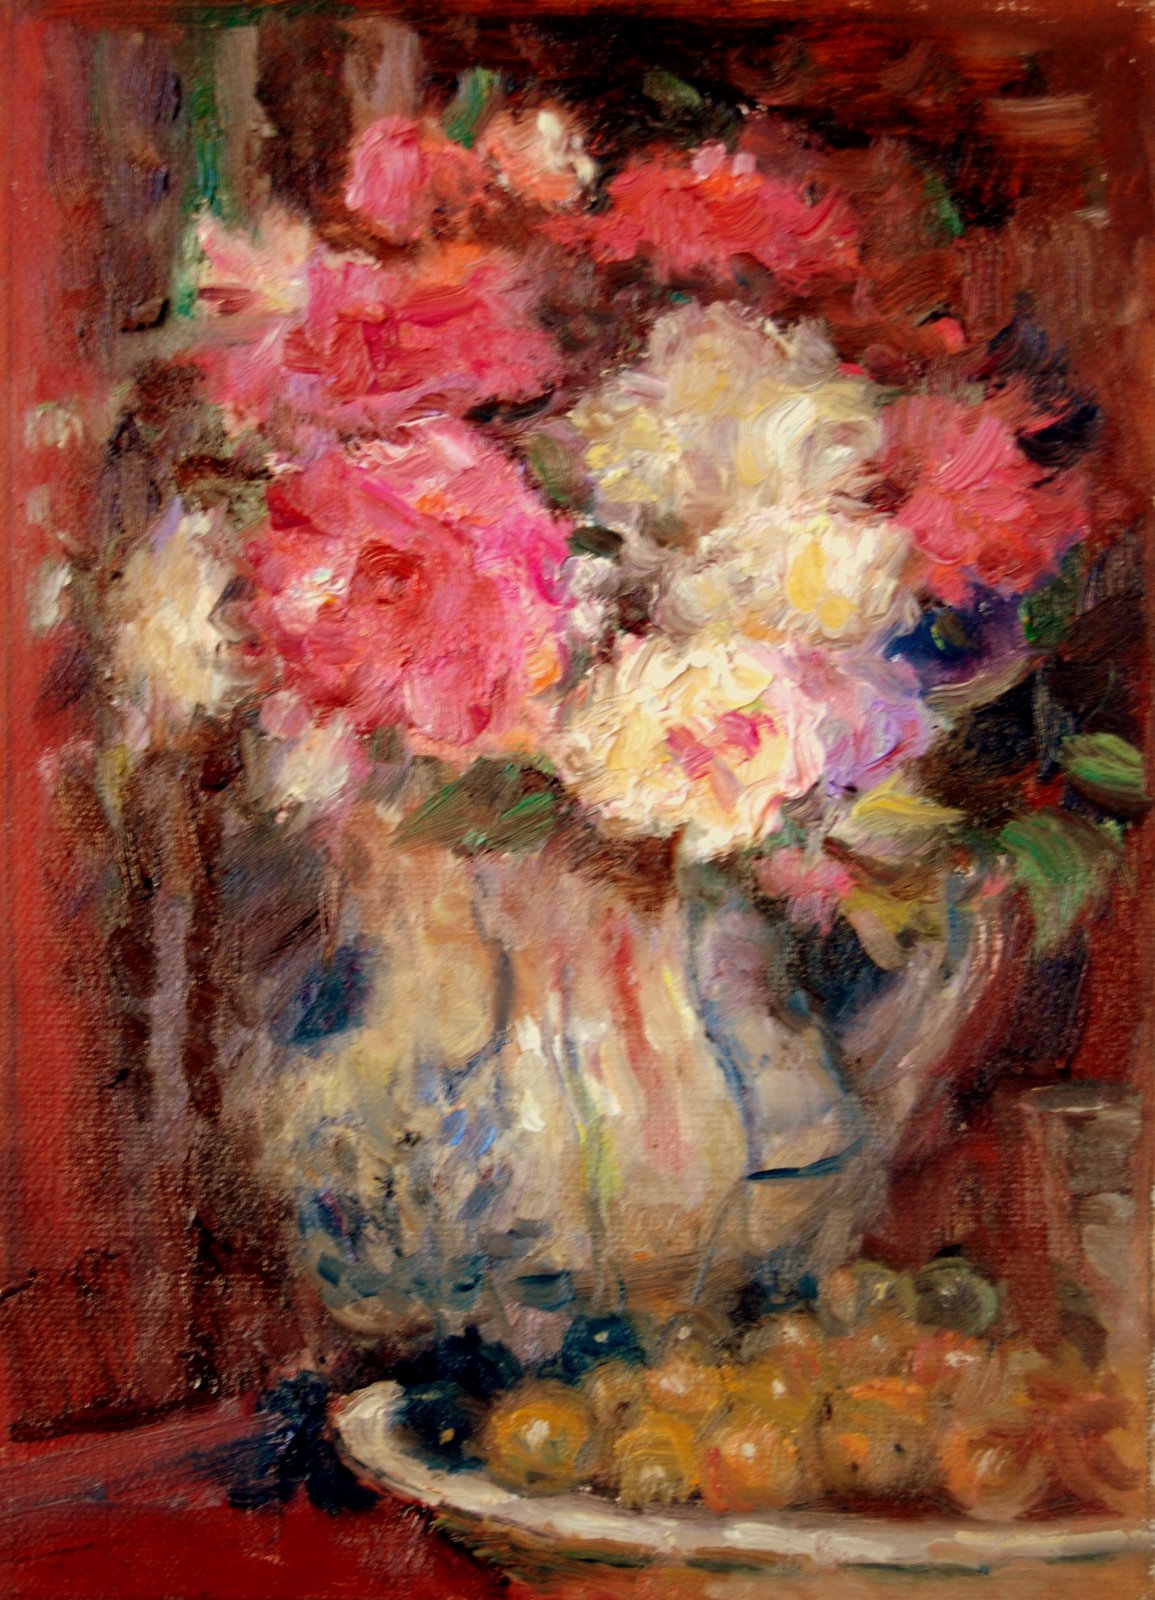 Pierre+Auguste+Renoir-1841-1-19 (178).JPG